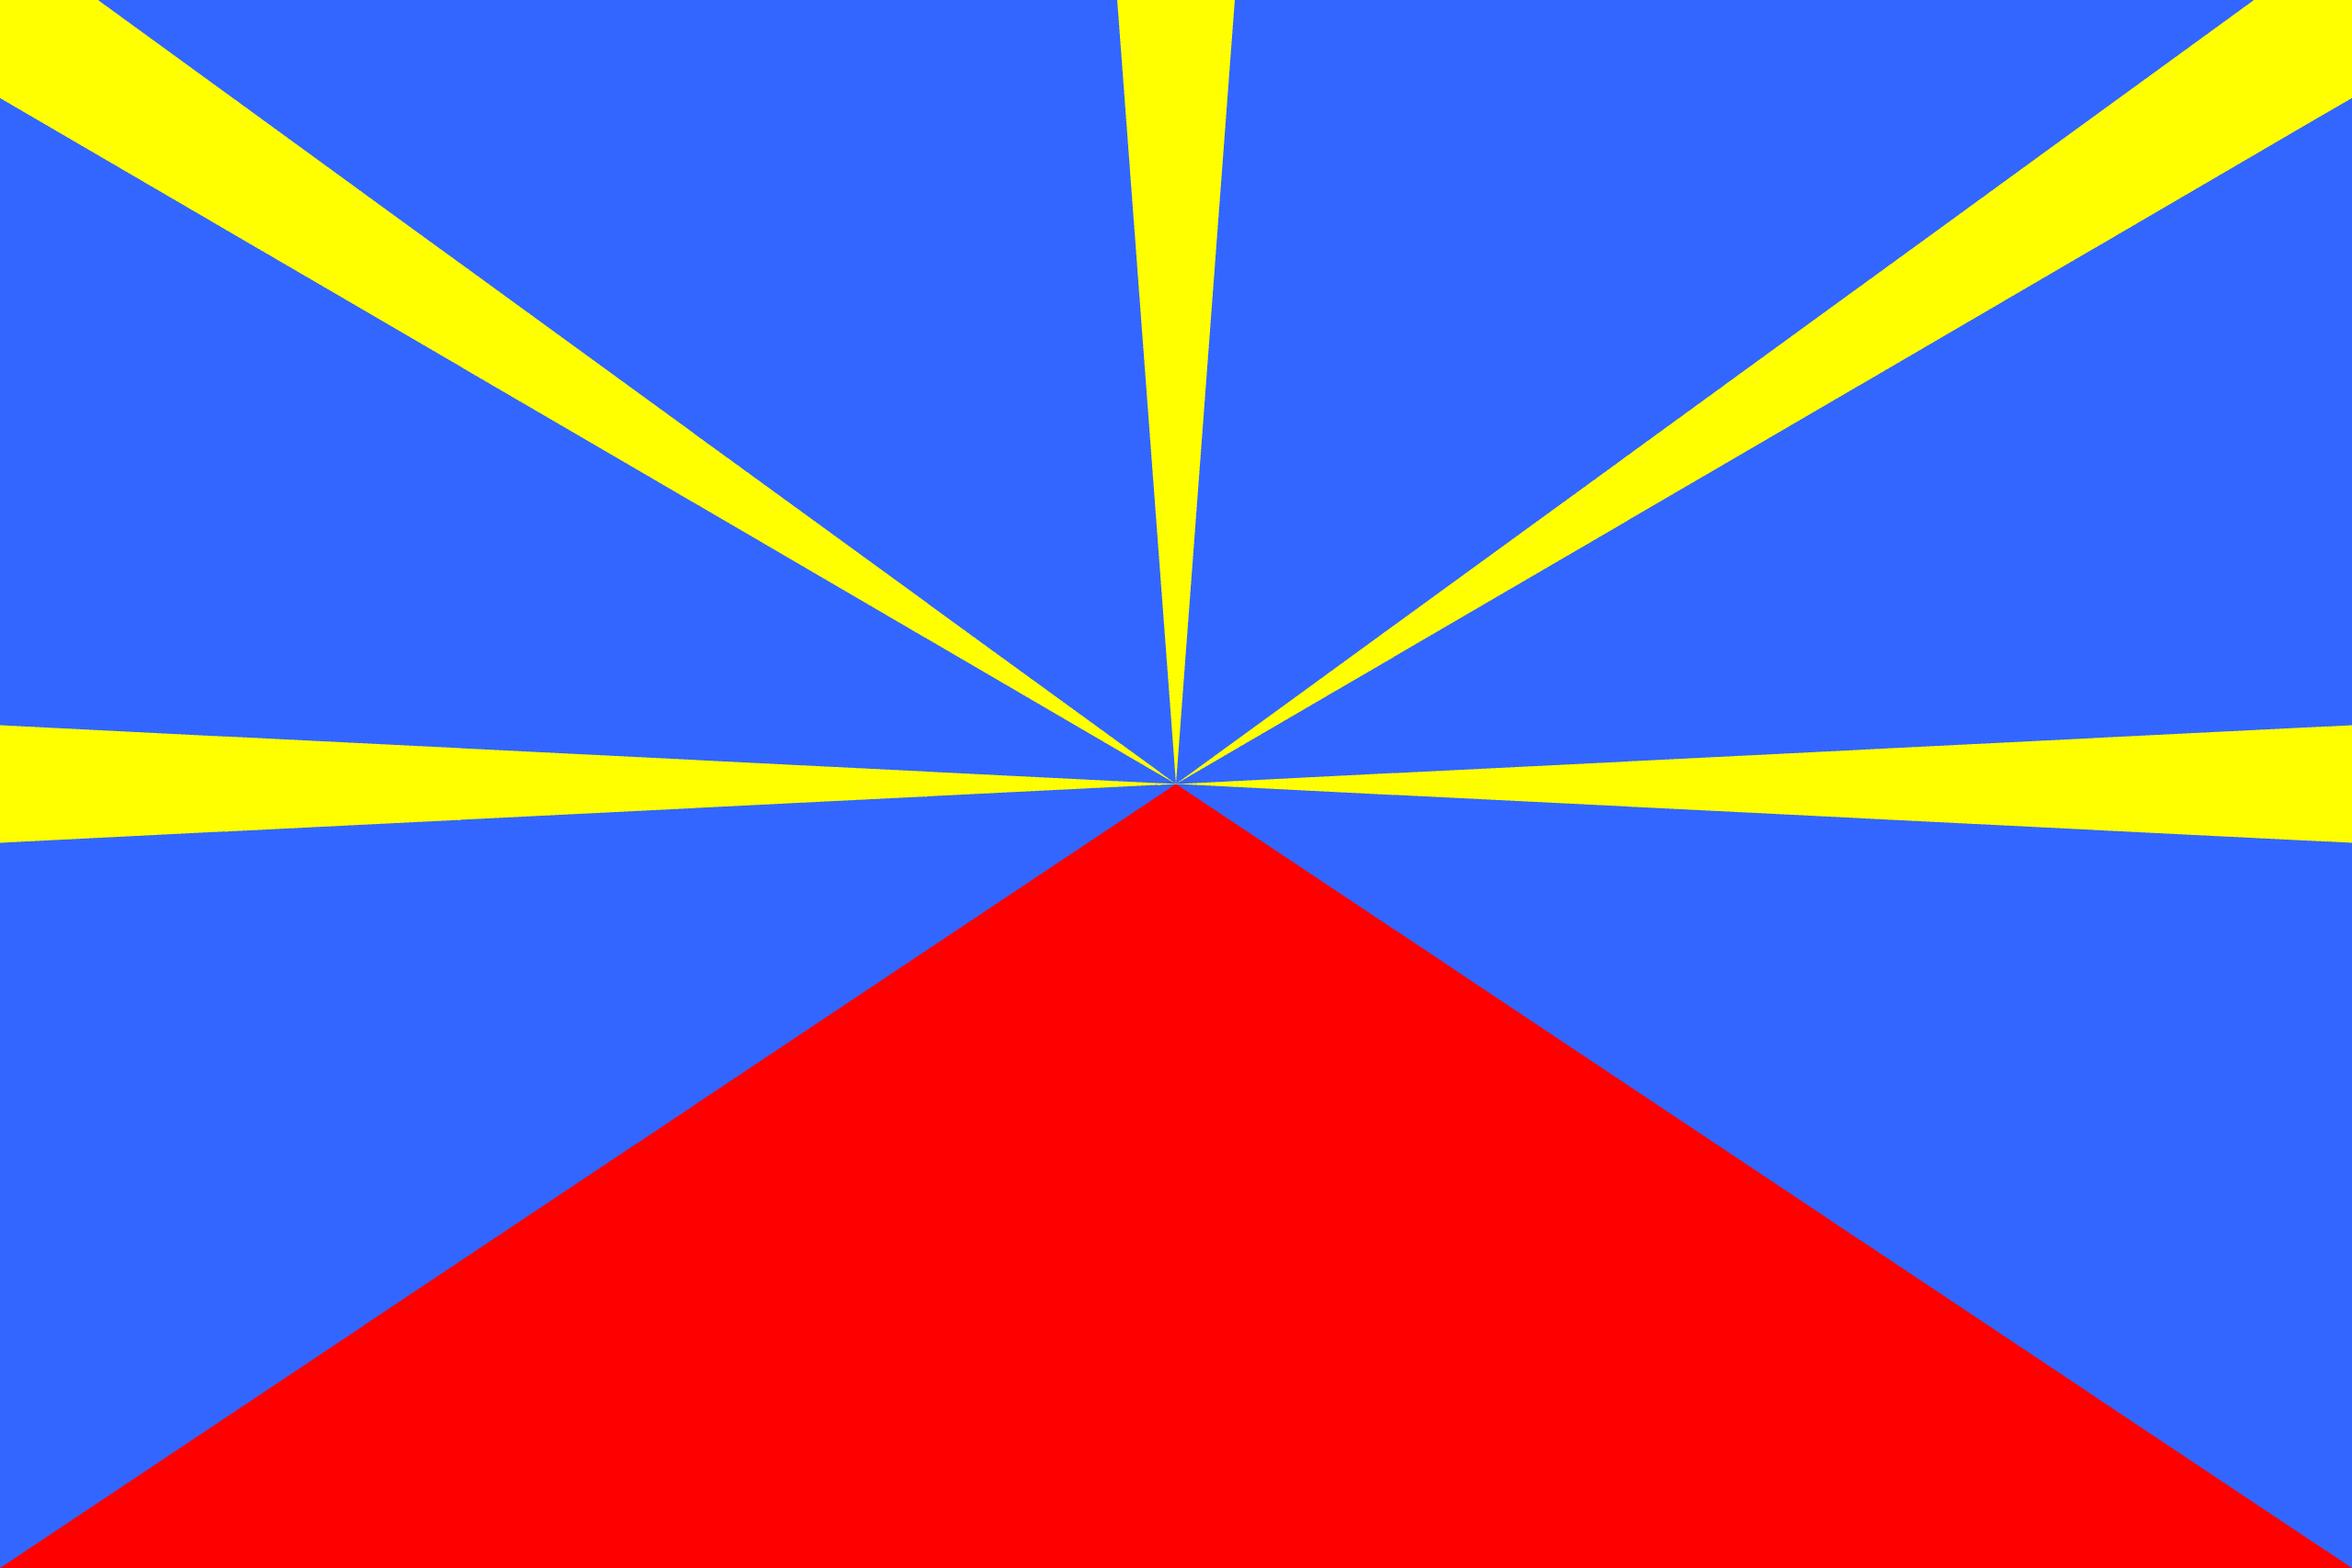 Réunion Flag